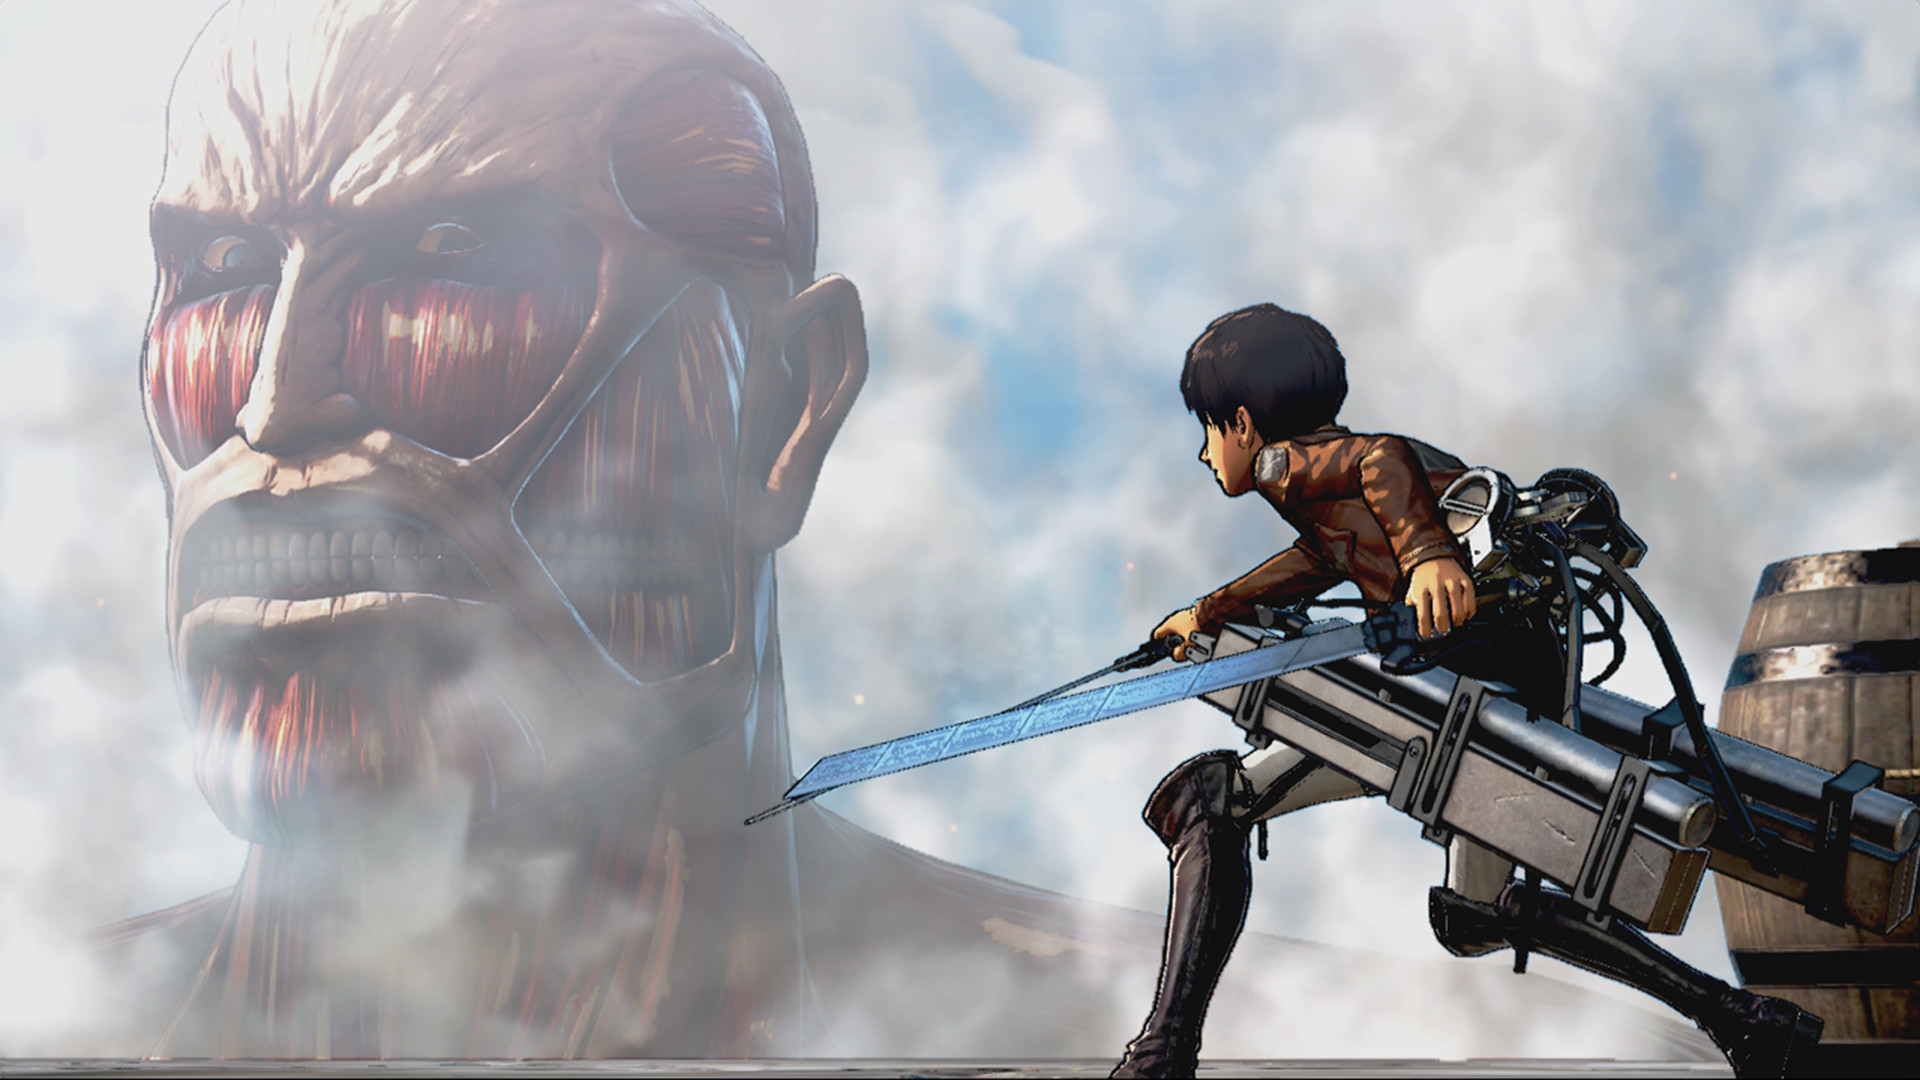 Game Anime Terbaik: Serangan di Titan. Gambar menunjukkan titan melihat seseorang dan tampak lapar